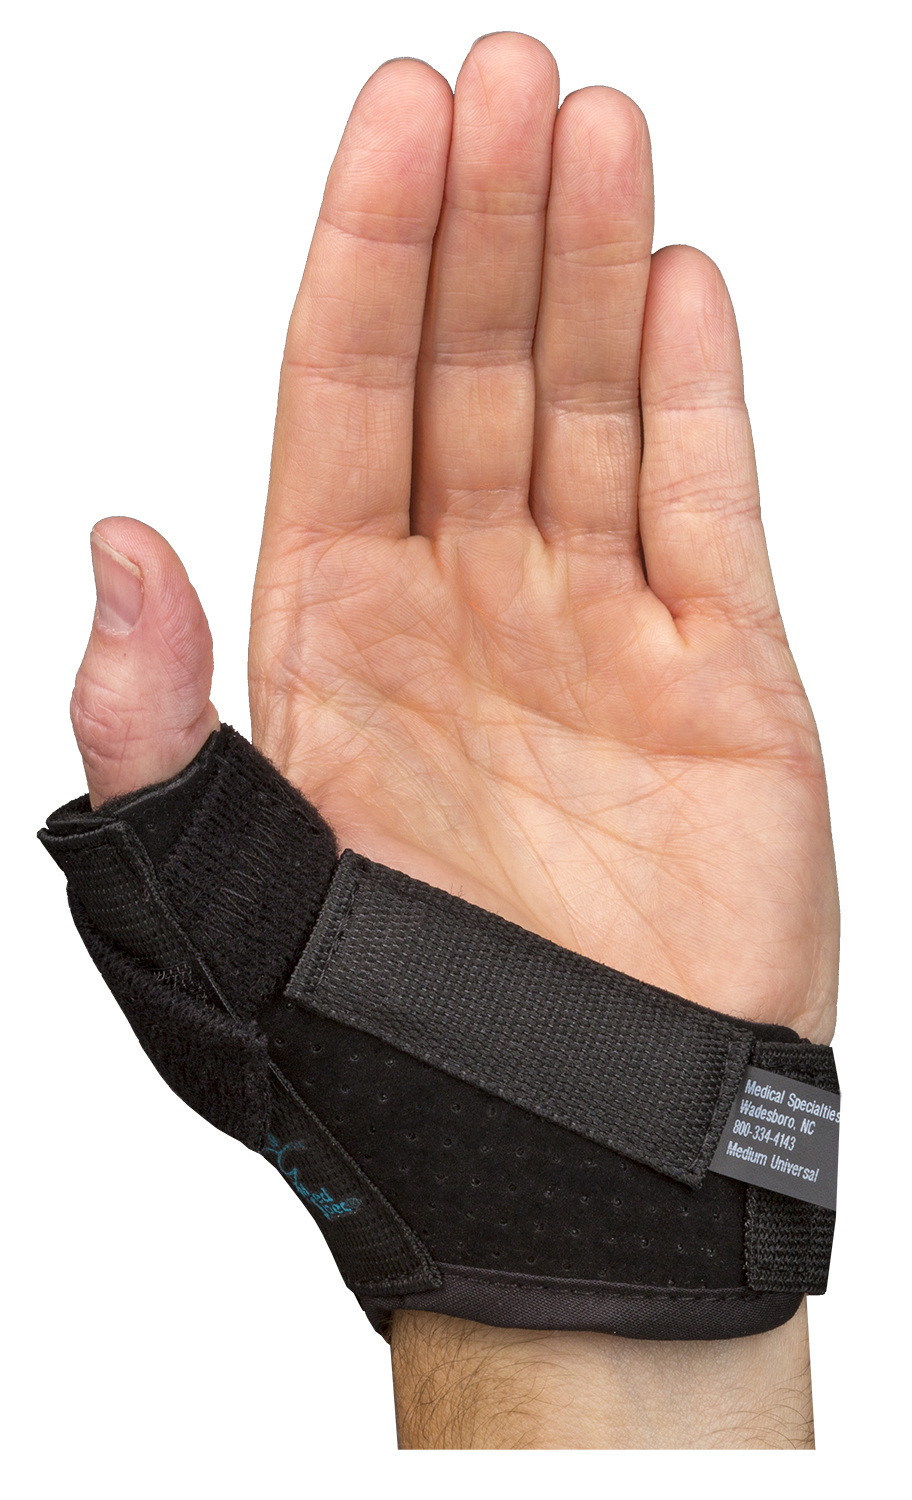 TeePeeTM Thumb Protector – Med Spec